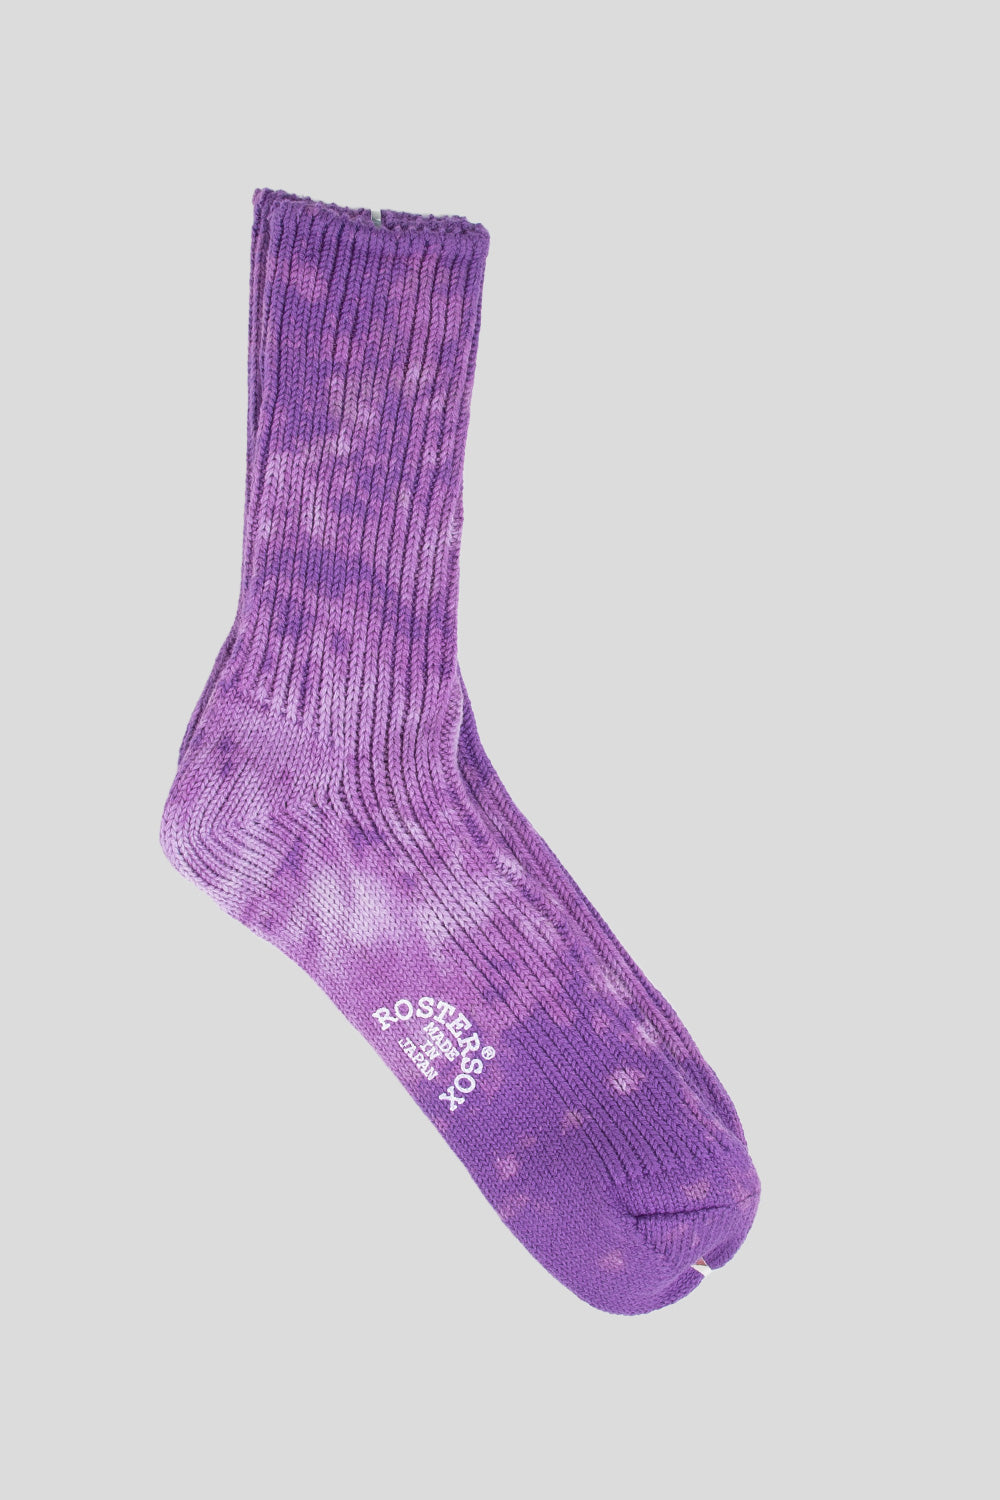 Rostersox BA Socks in Purple